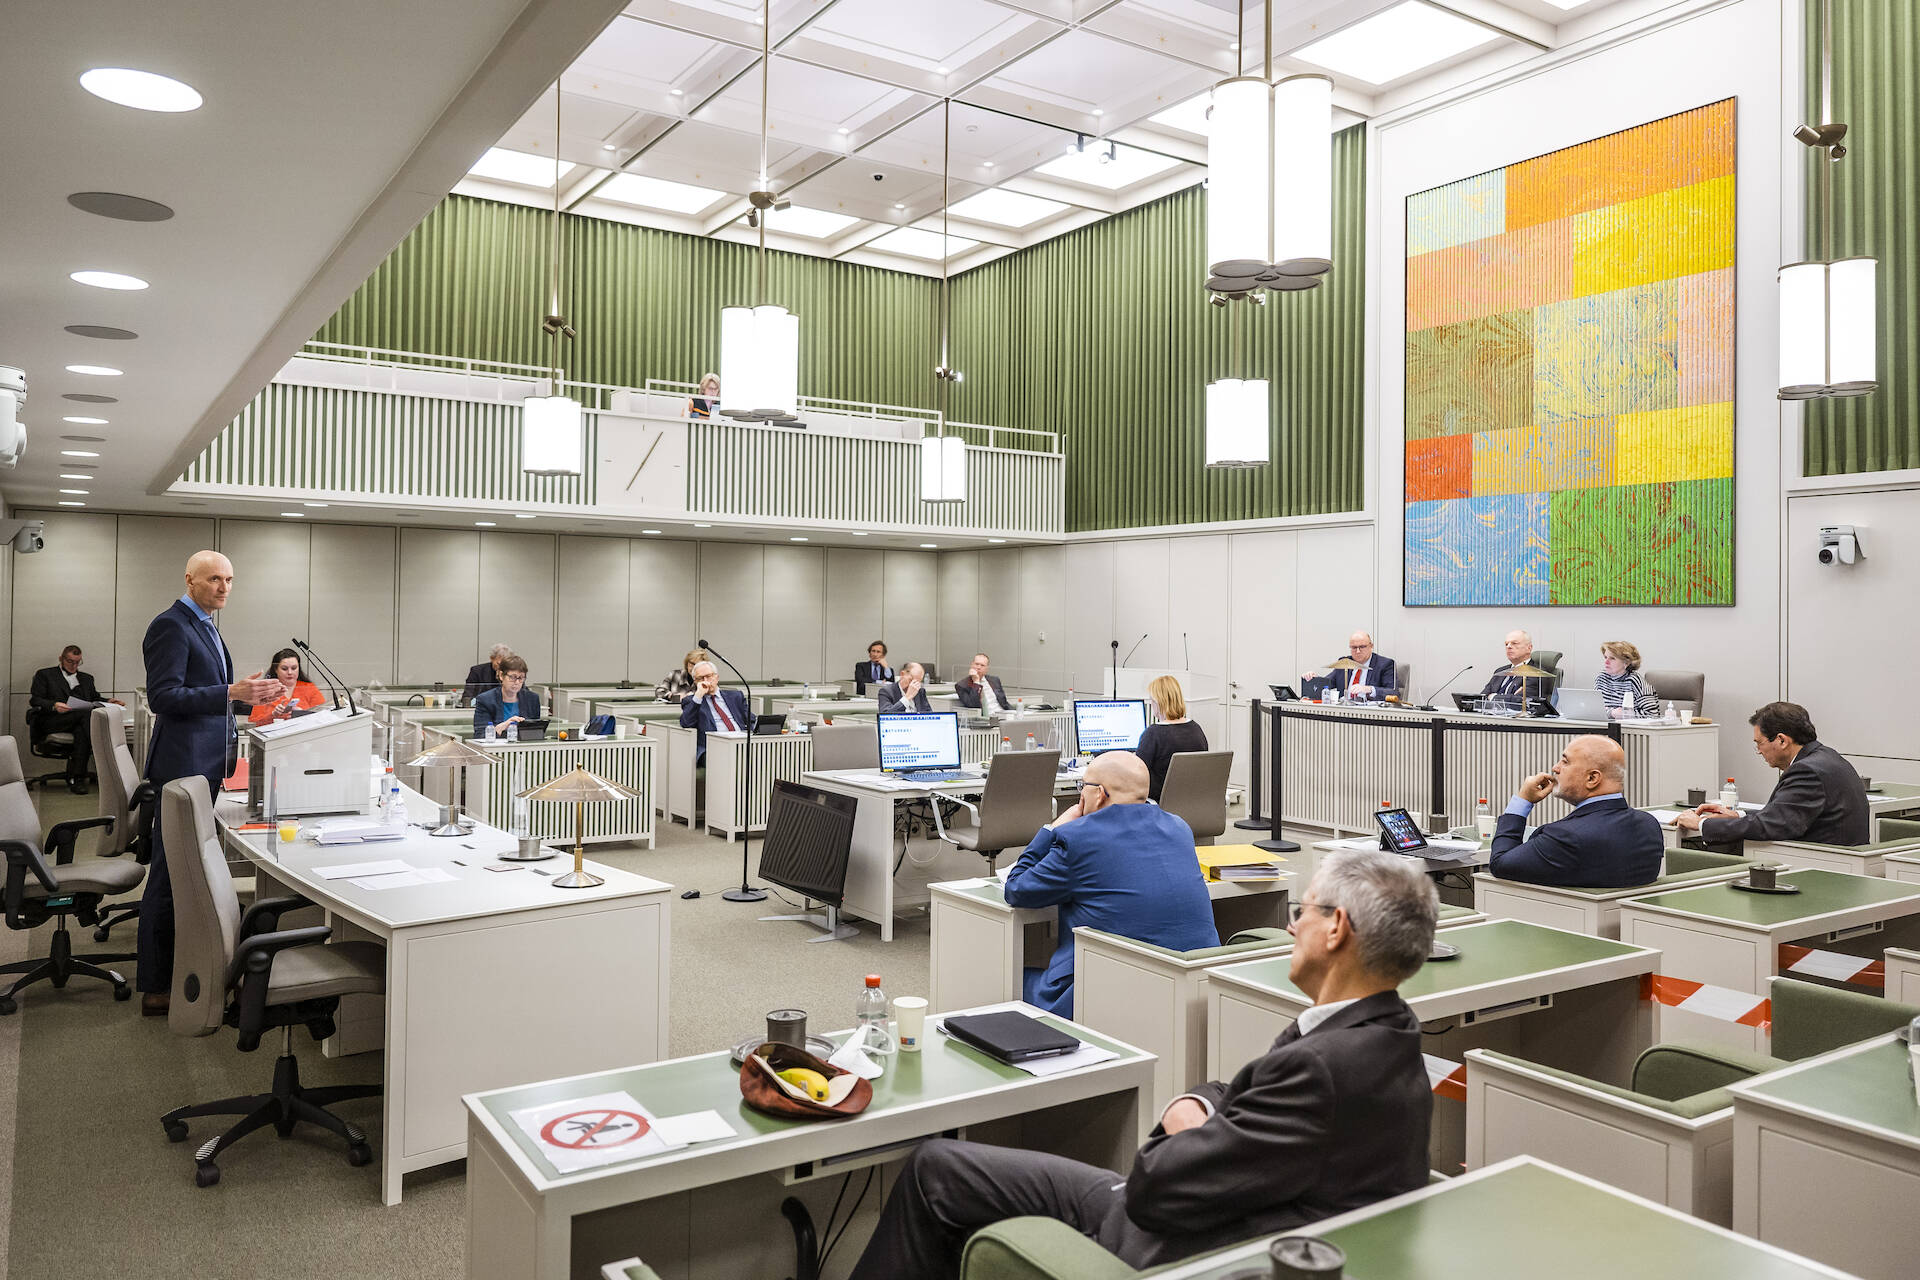 De Kamer tijdens het debat op 21 februari 2022